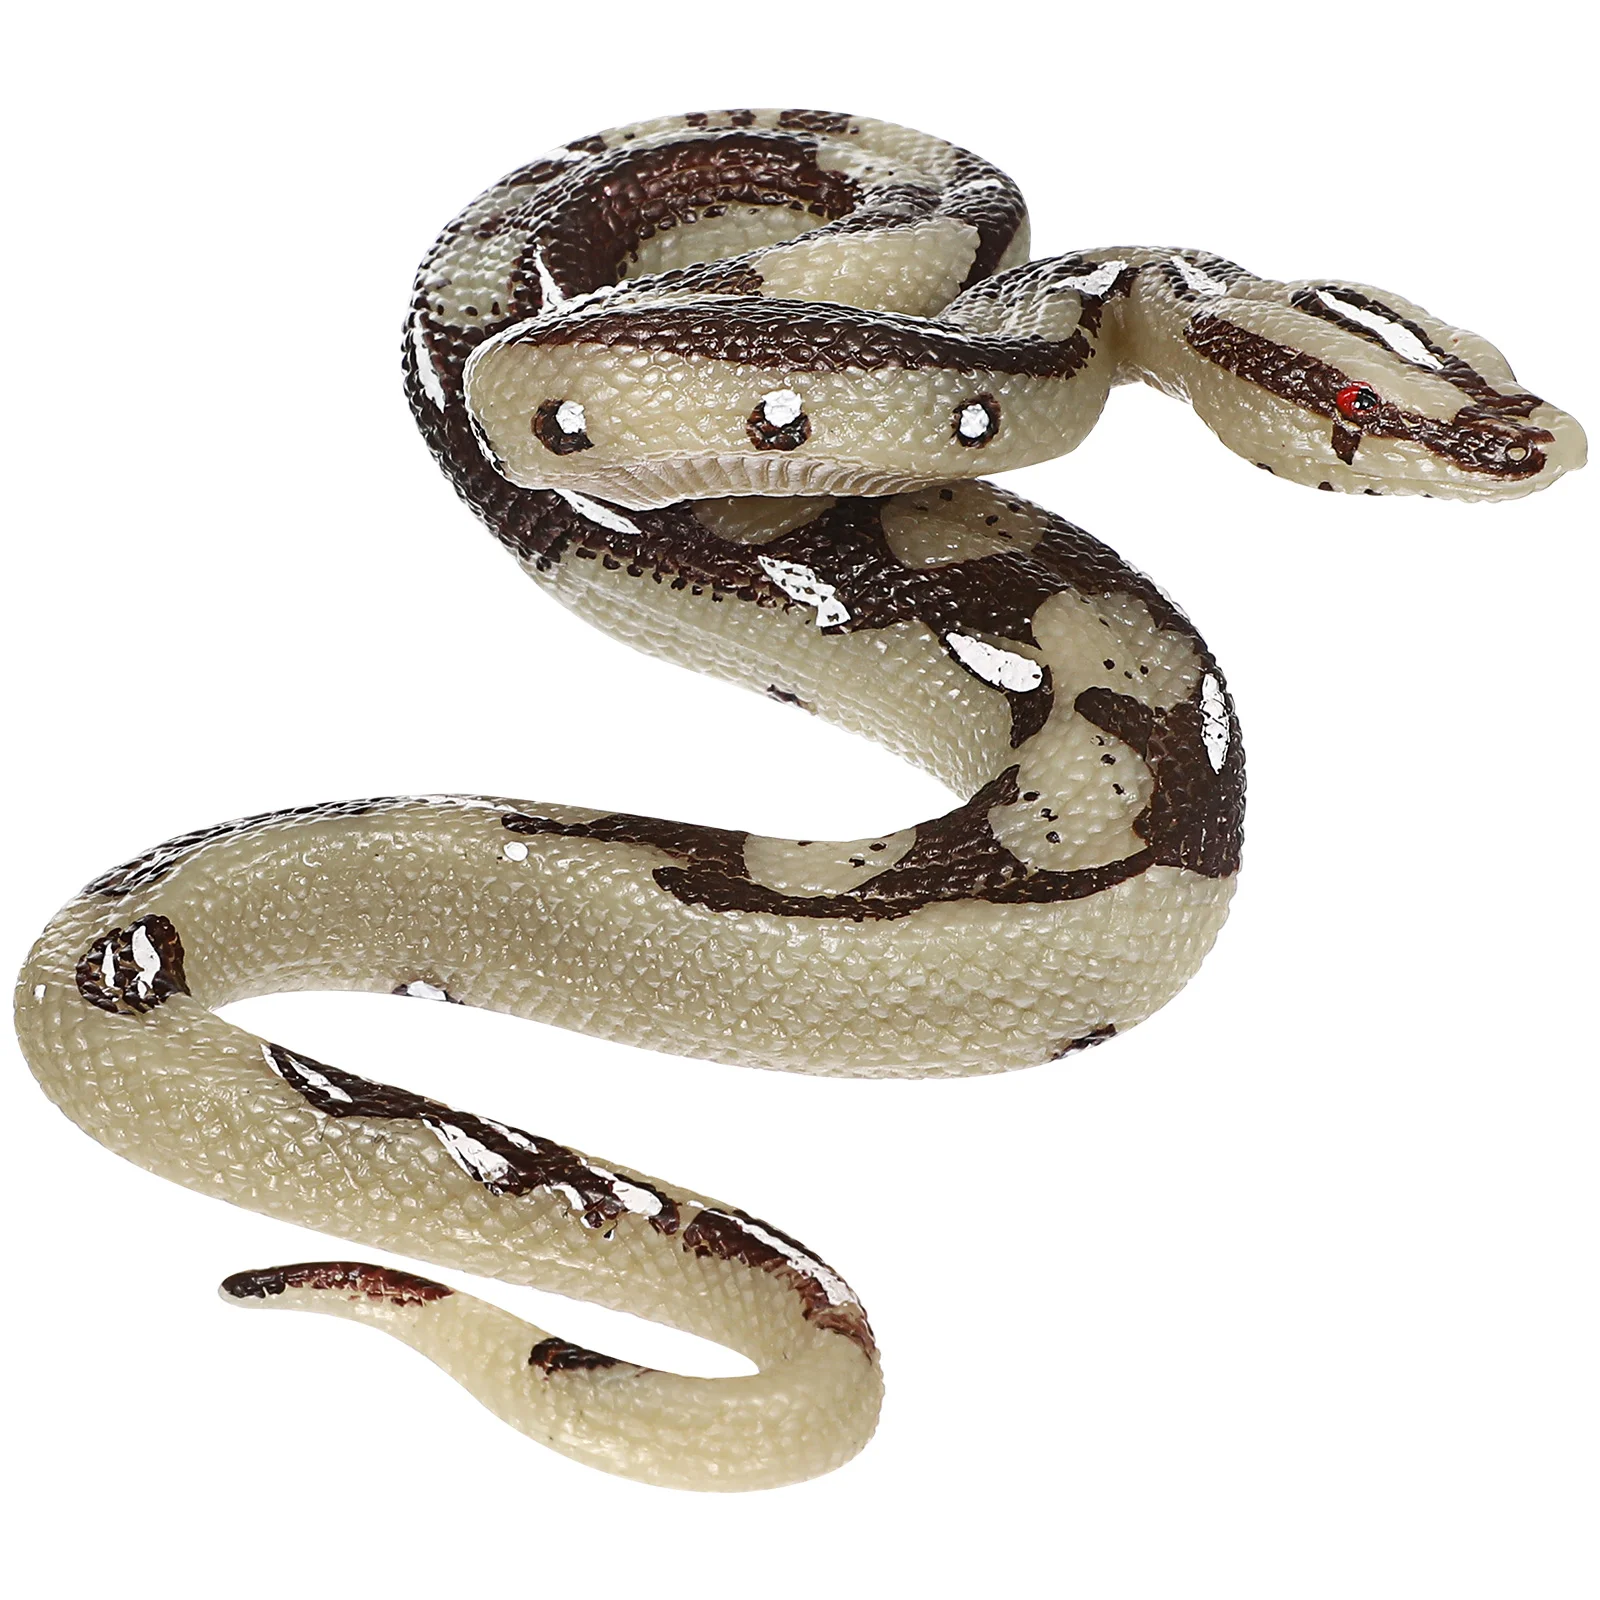 

Змея, Реалистичная змея, резиновая фигурка змеи на День Дурака апреля, реквизит, неподходящая вещь